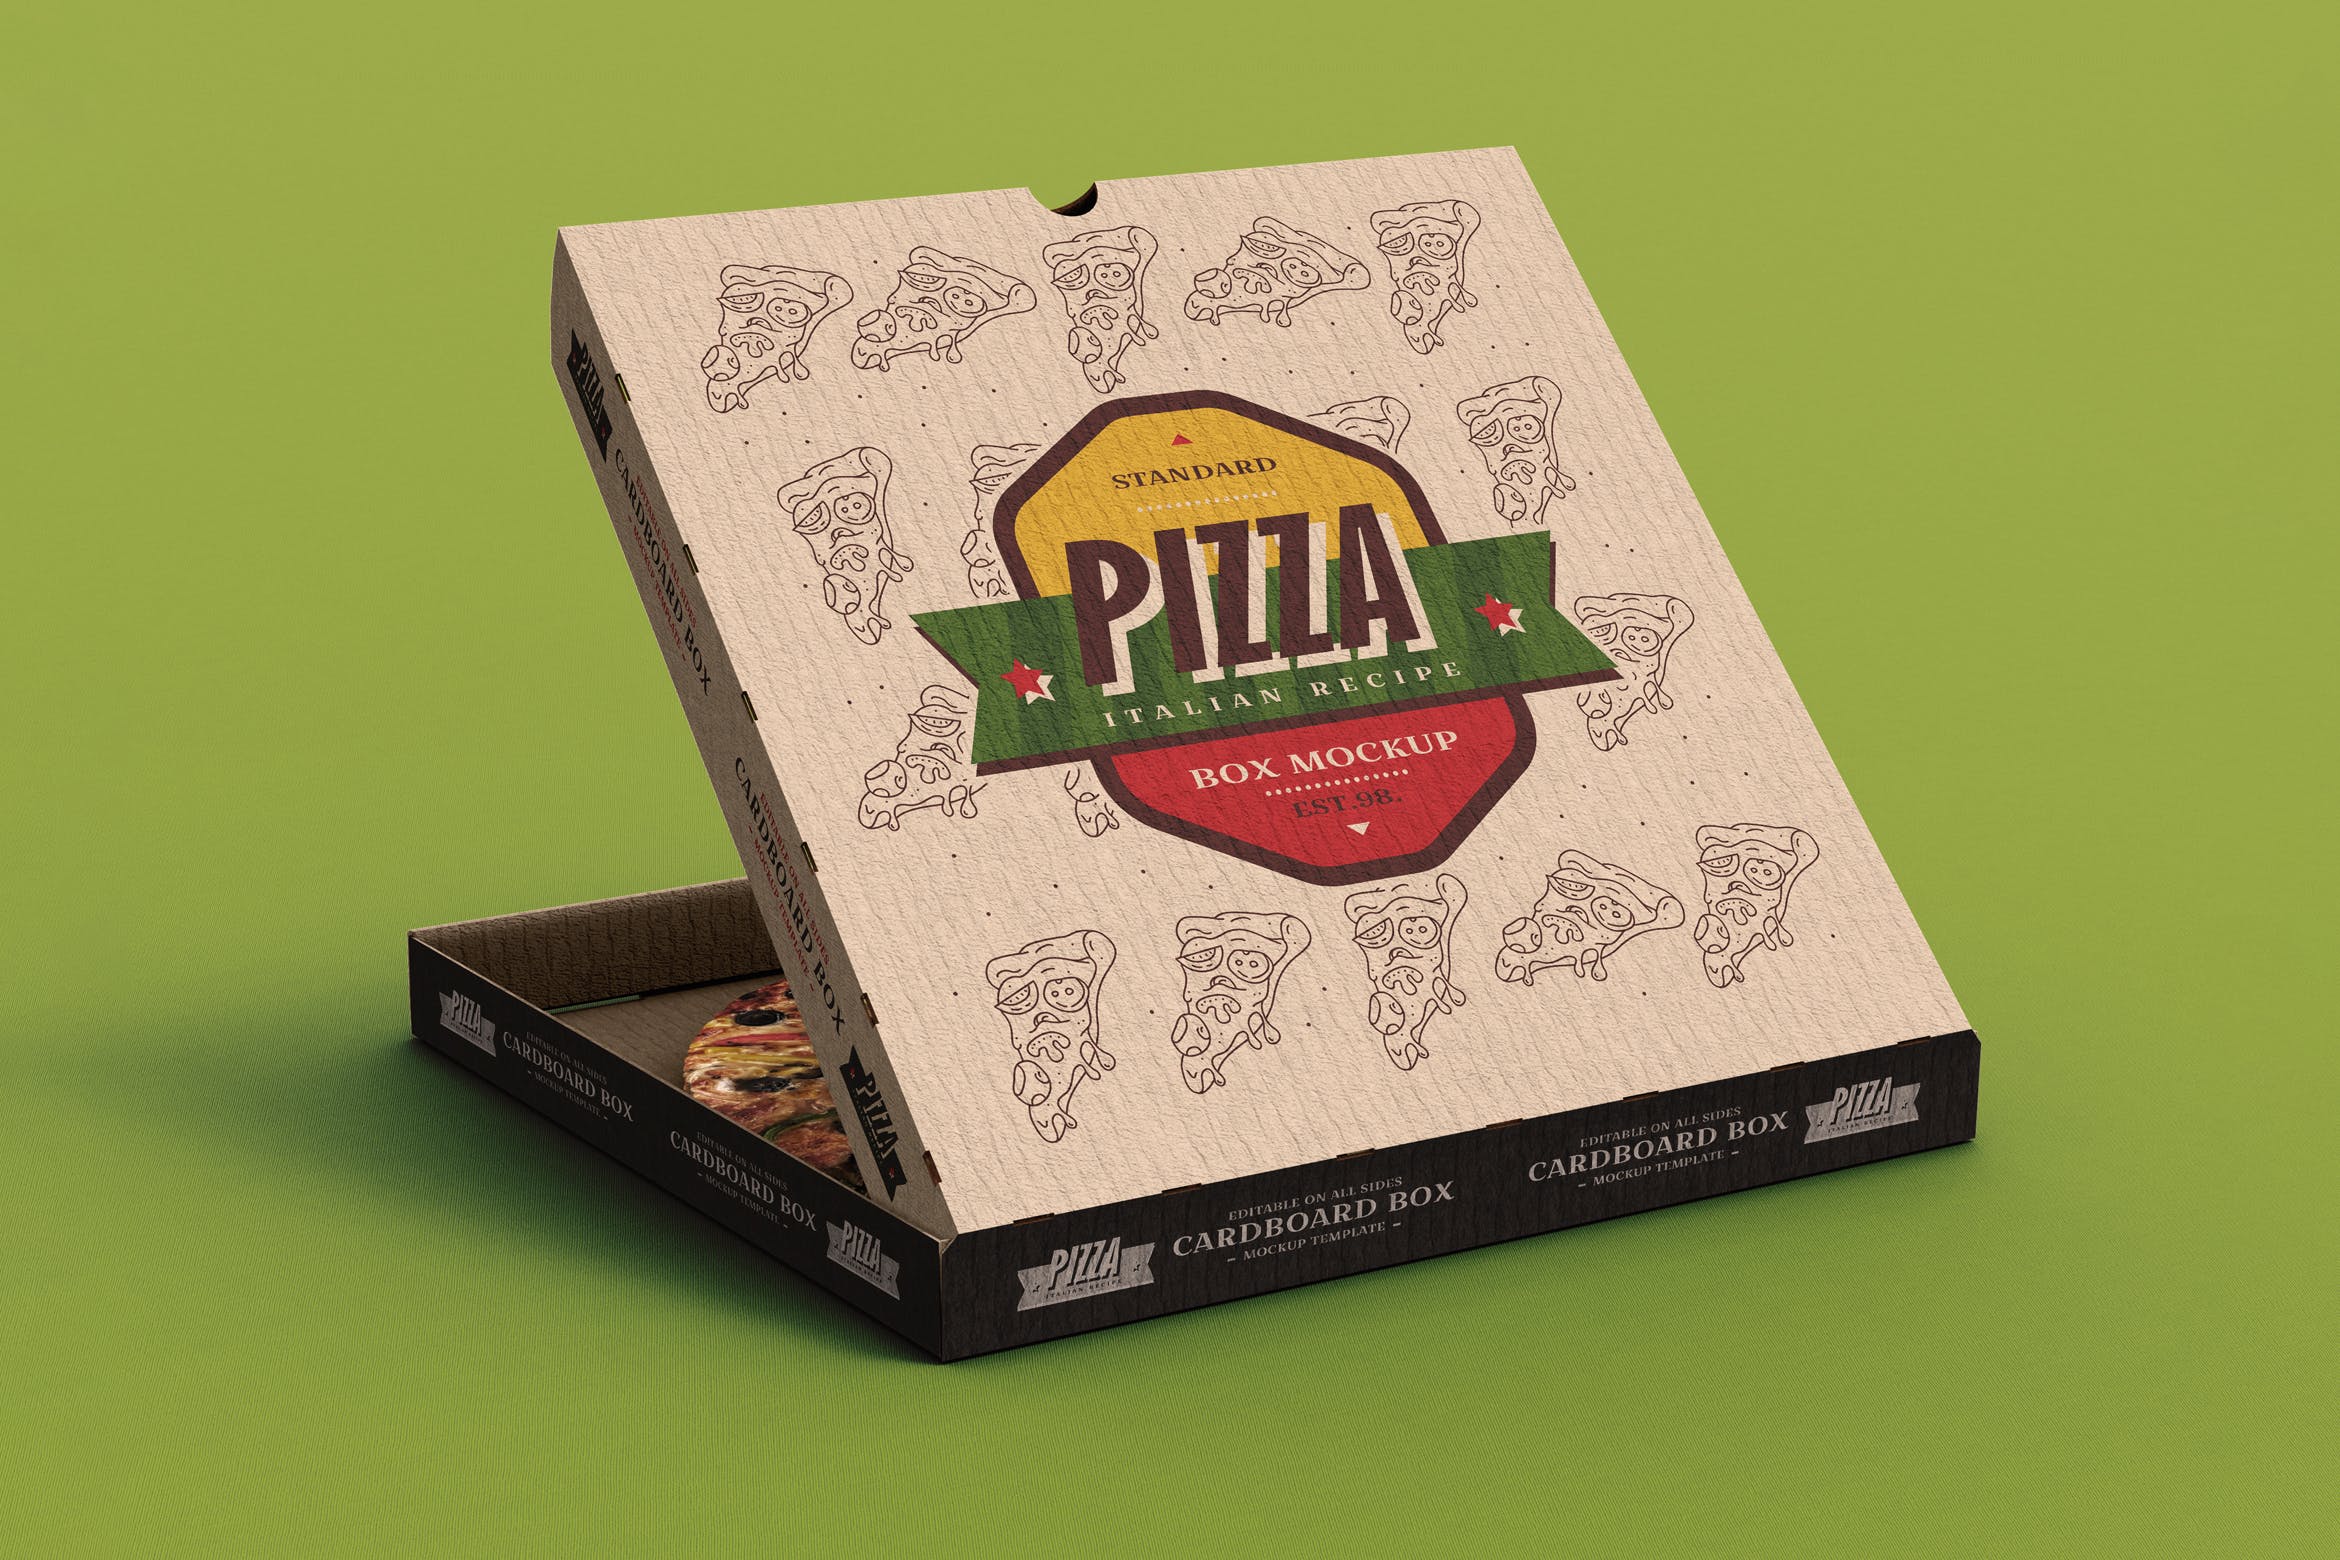 披萨包装盒外观设计效果演示样机模板 Pizza Box Mock-Up Template插图